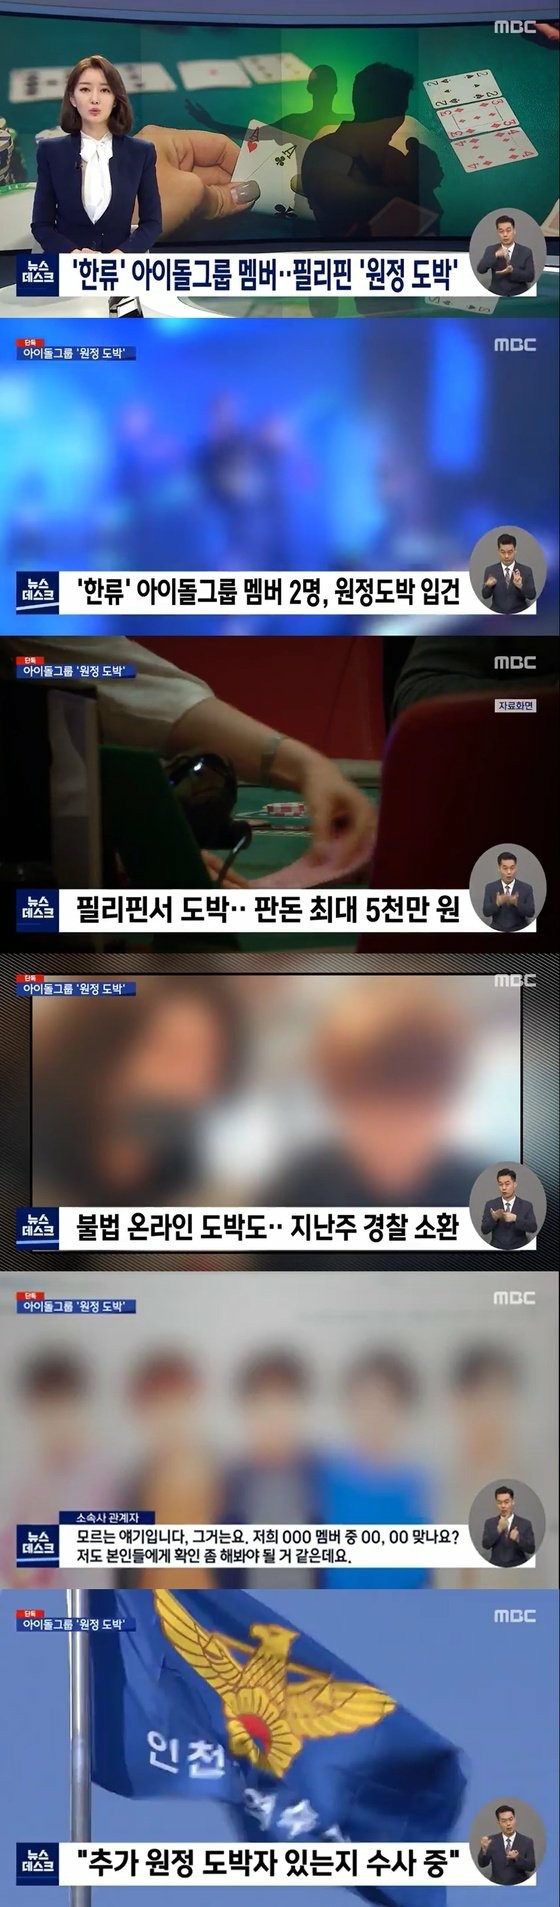 30 대 유명 아이돌 멤버 2 명, 해외 원정 도박 혐의로 입건와 MBC가 보도 ... 5000 만원에 달한다 래치